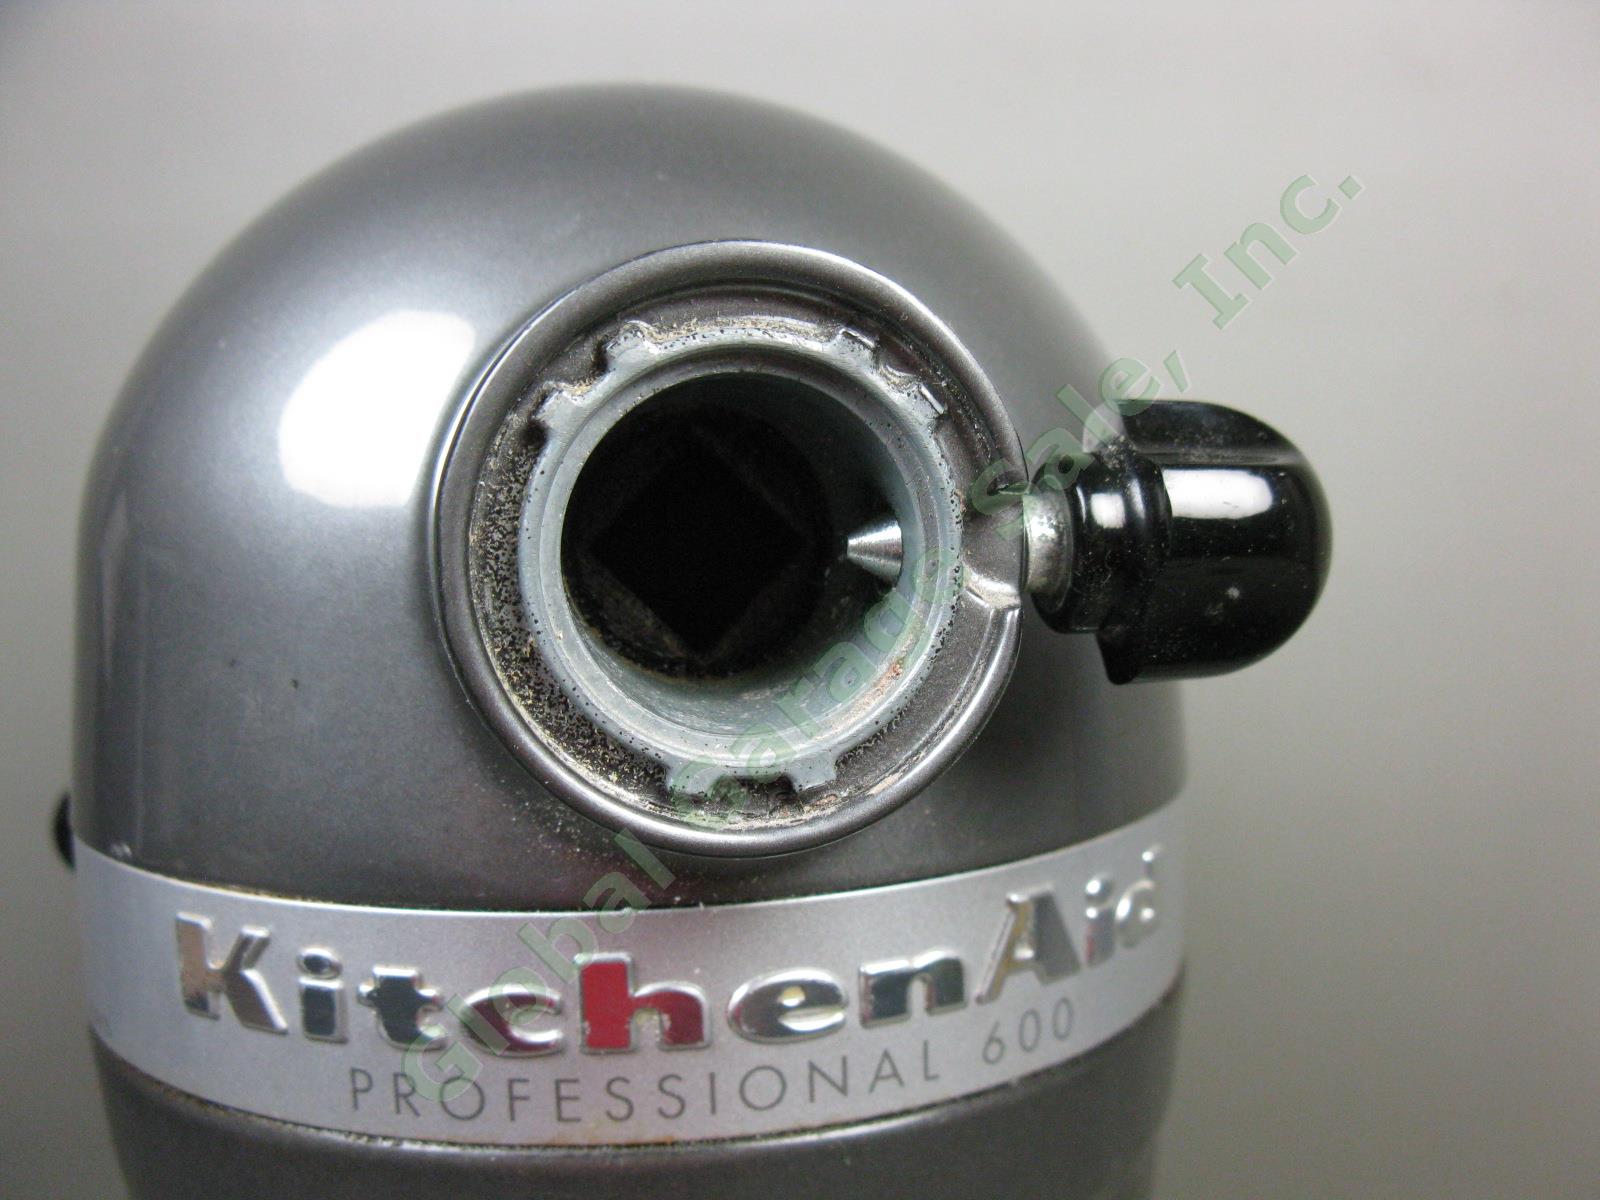 KitchenAid KP26M1XPM Professional 600 6-Quart QT Pearl Metallic Stand Mixer Lot 4